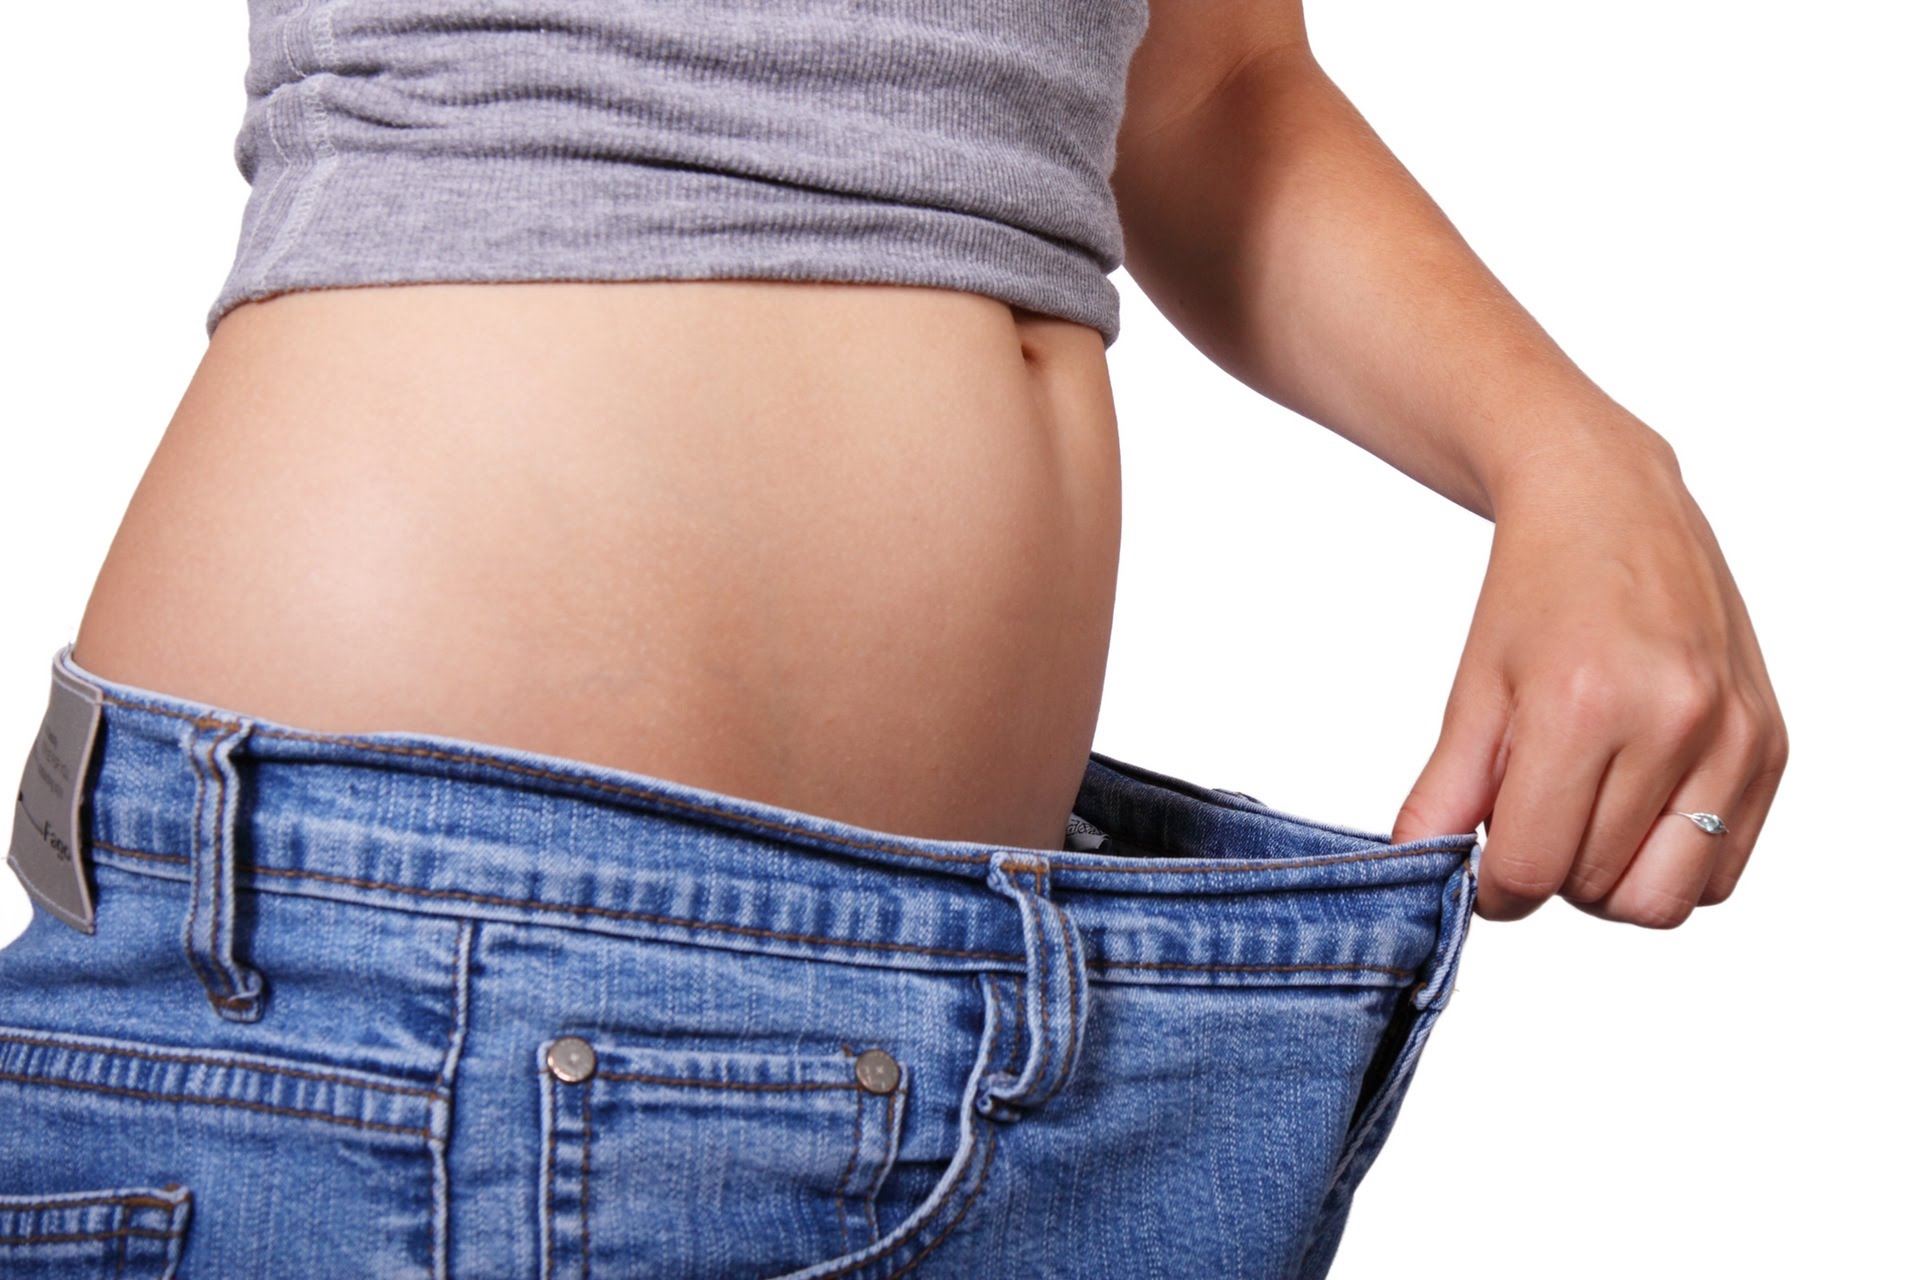 წონაში დაკლების ხრიკები - გაიმარტივეთ რთული საქმე